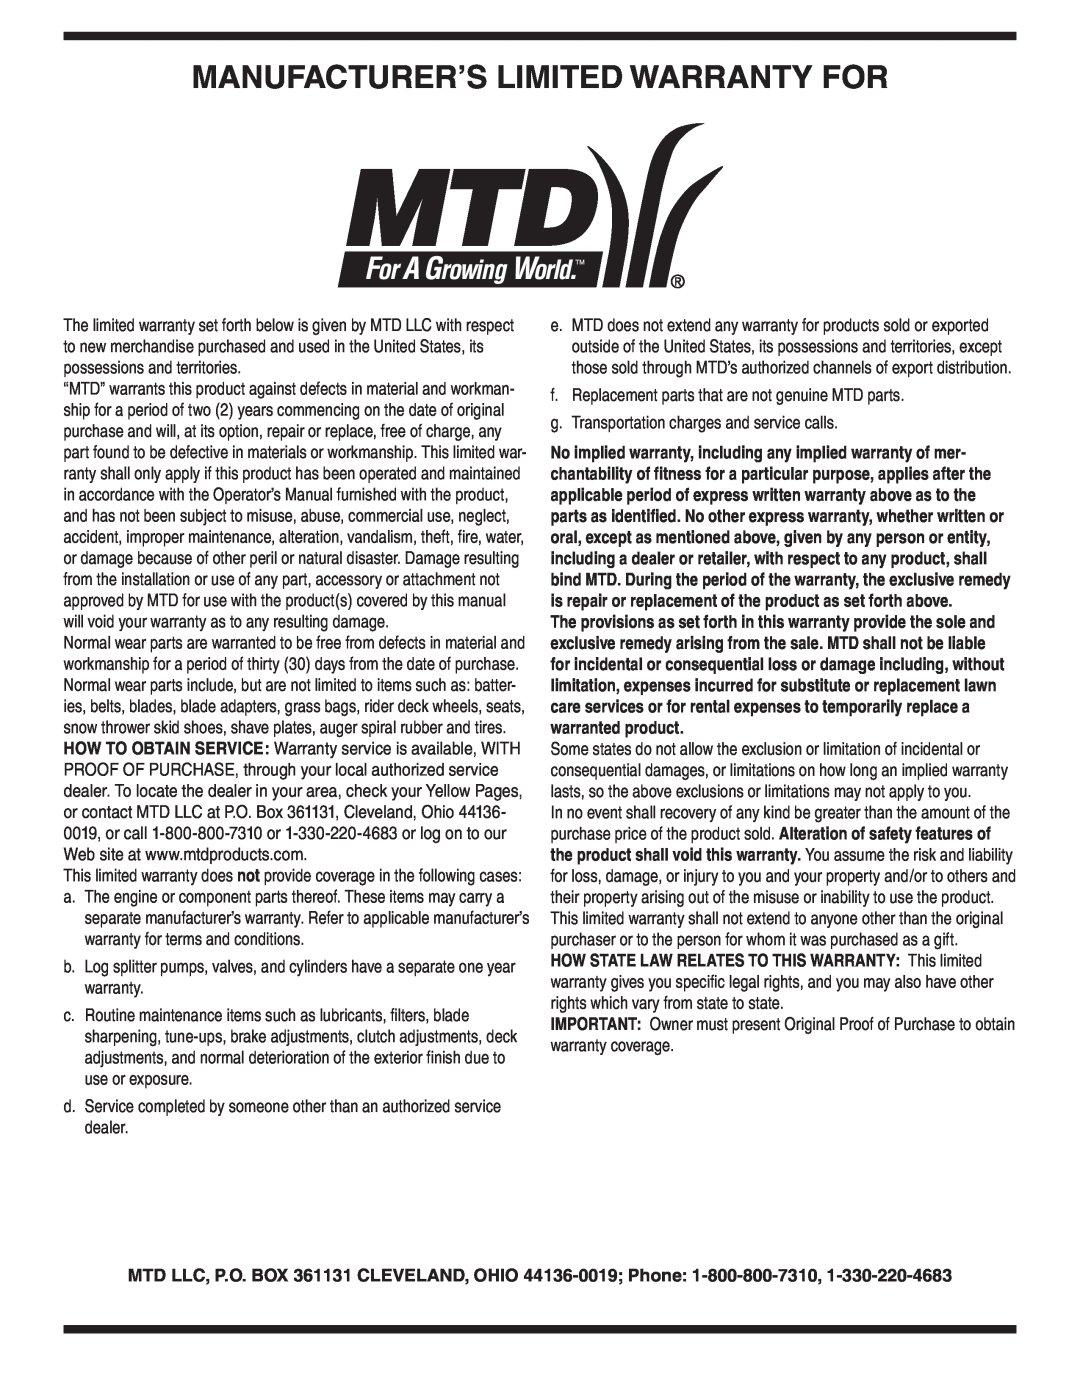 MTD V560 warranty Manufacturer’S Limited Warranty For 